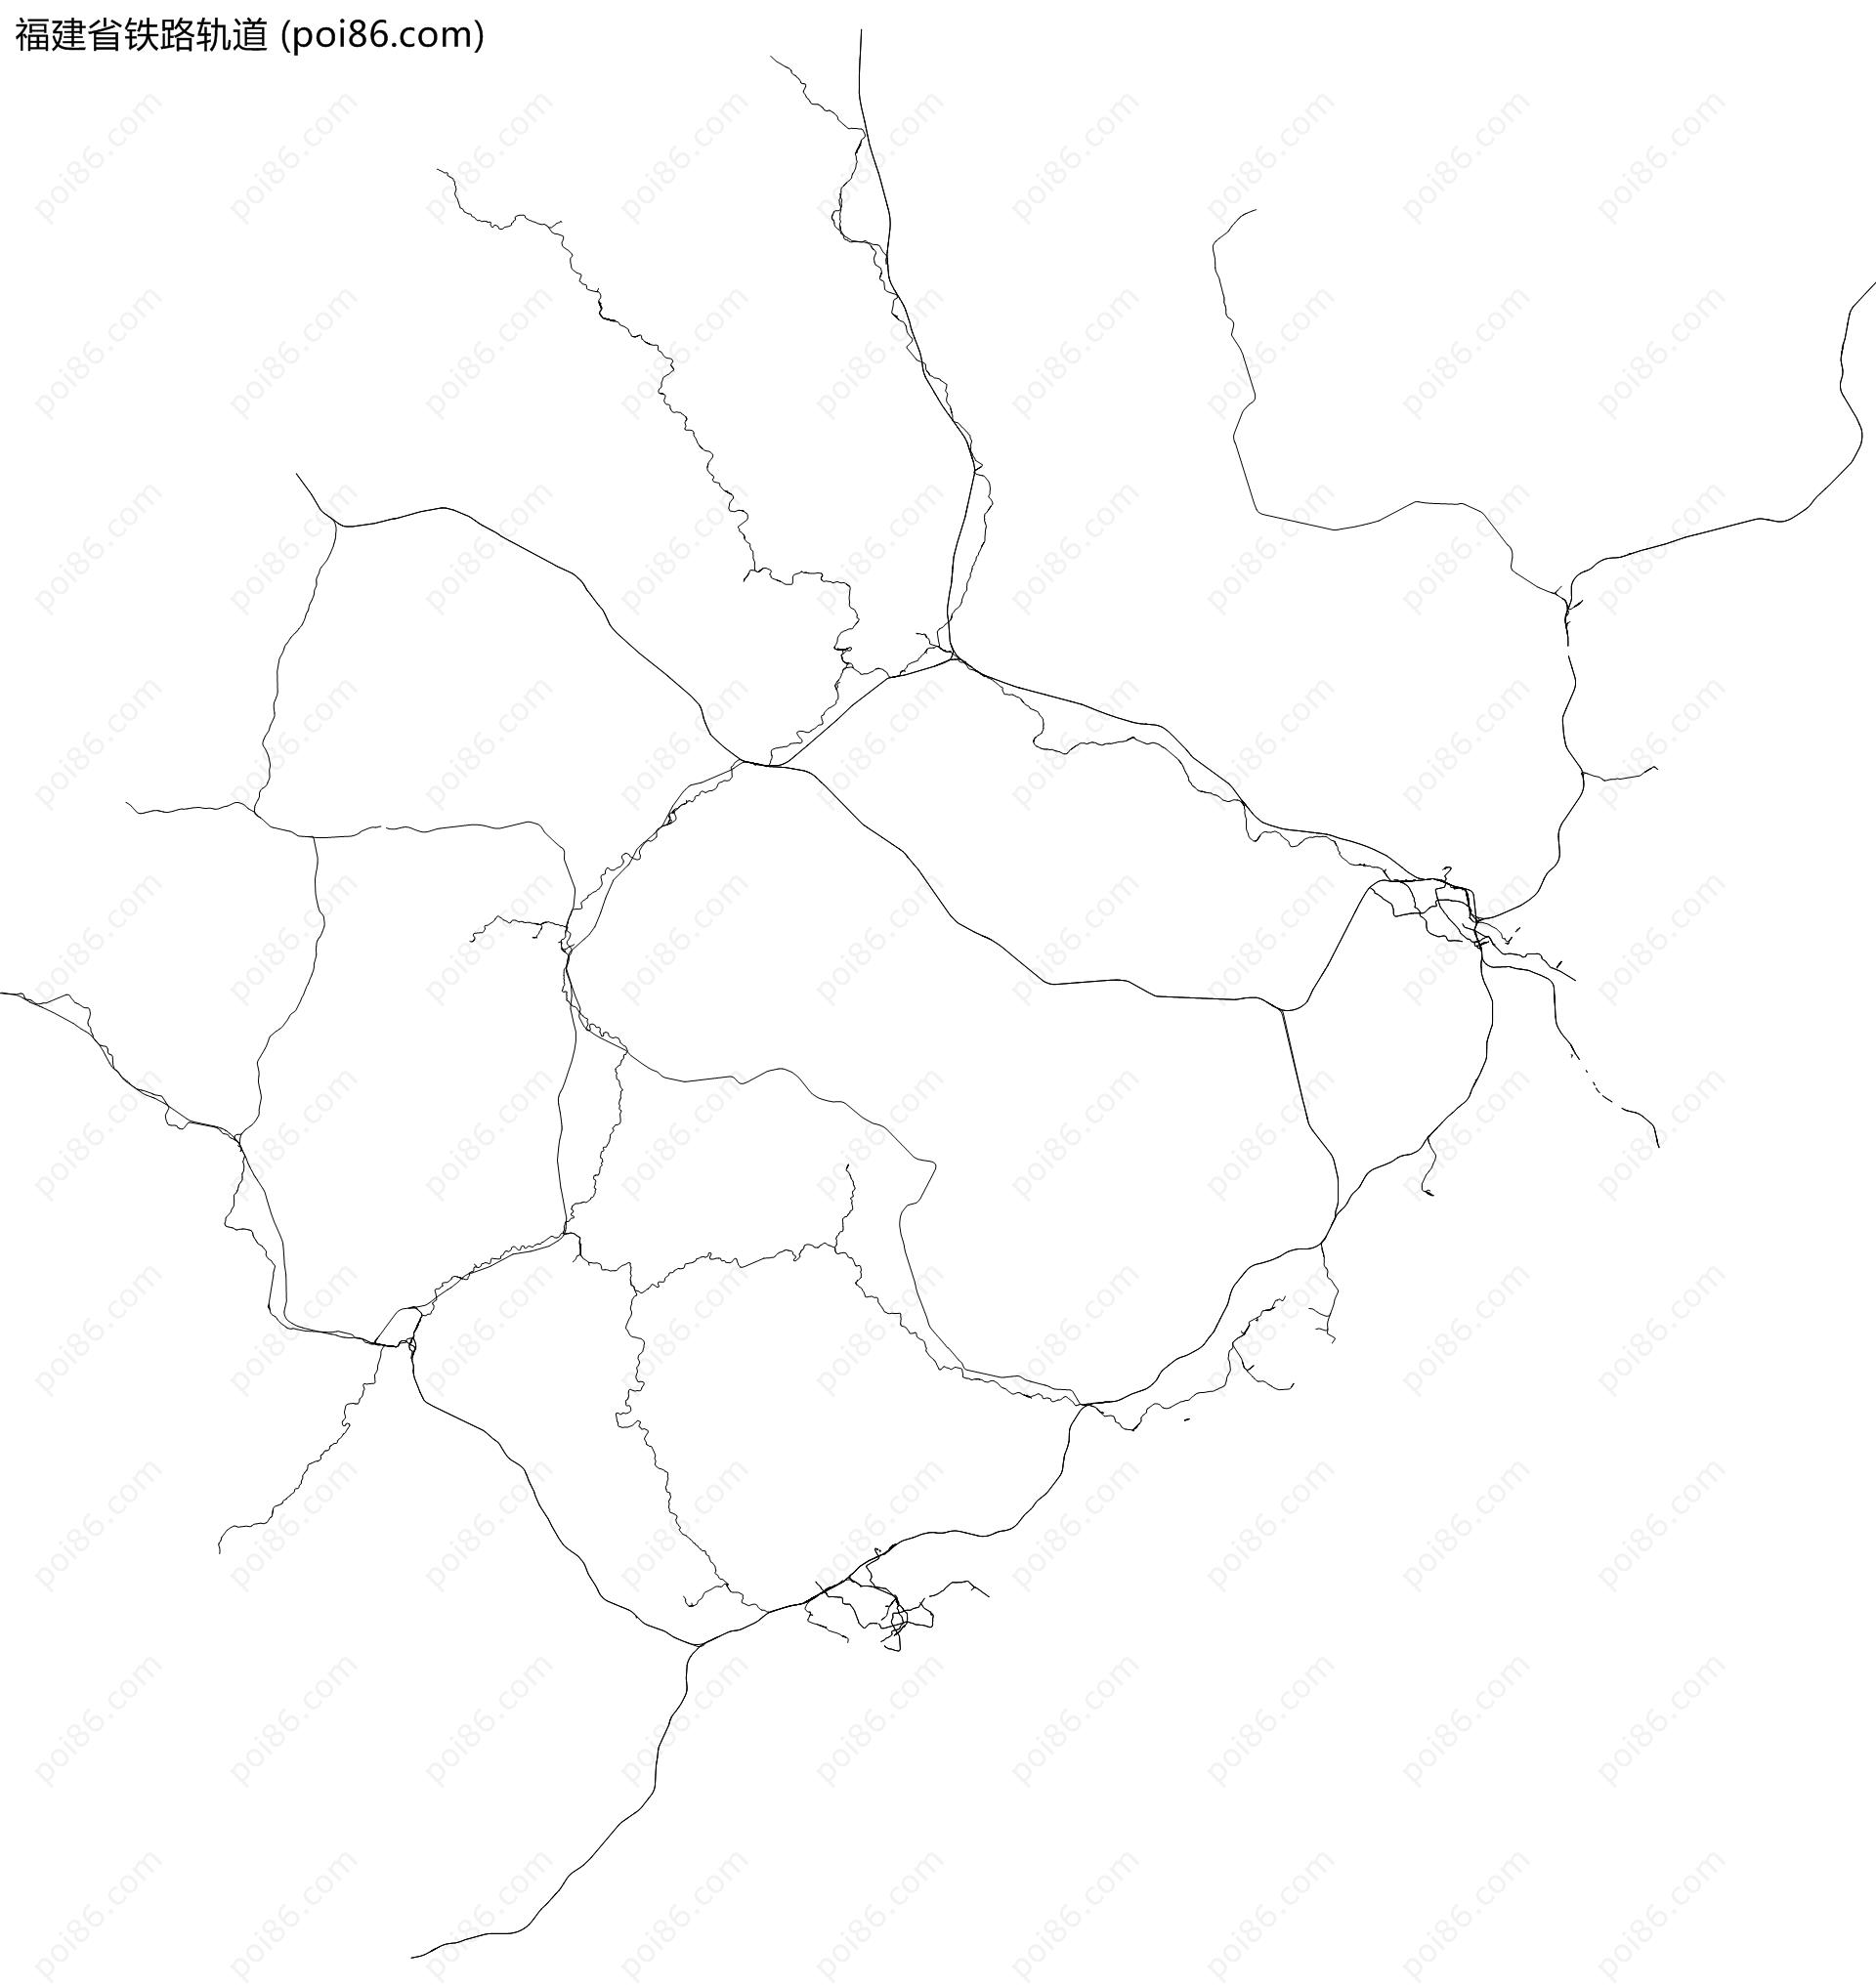 福建省铁路轨道地图